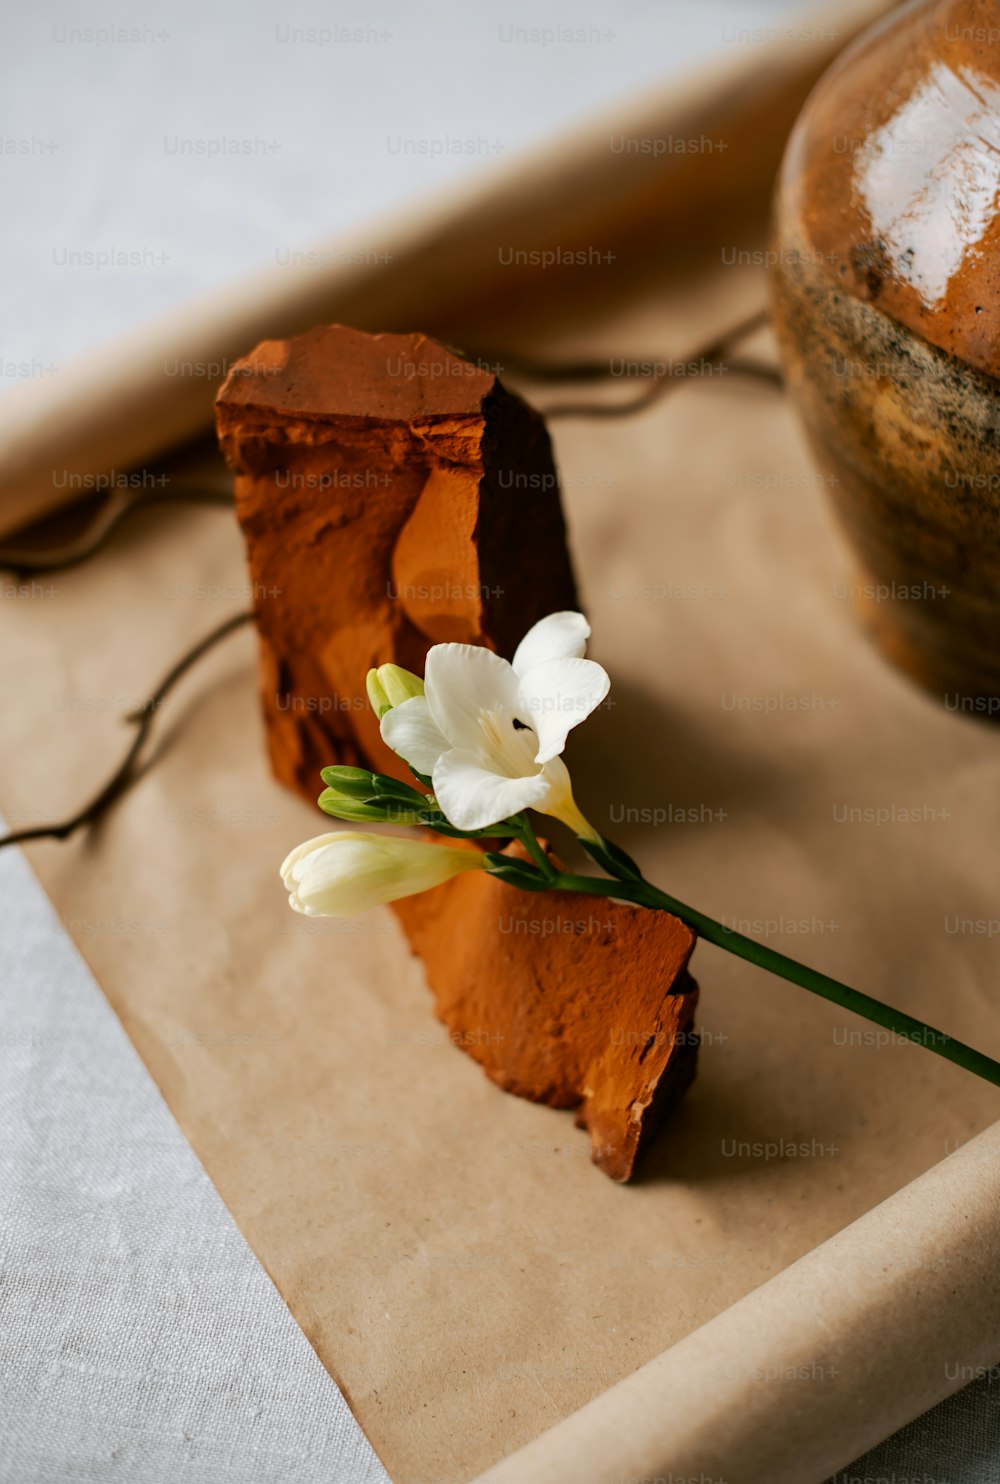 Un pedazo de pastel con una flor encima.